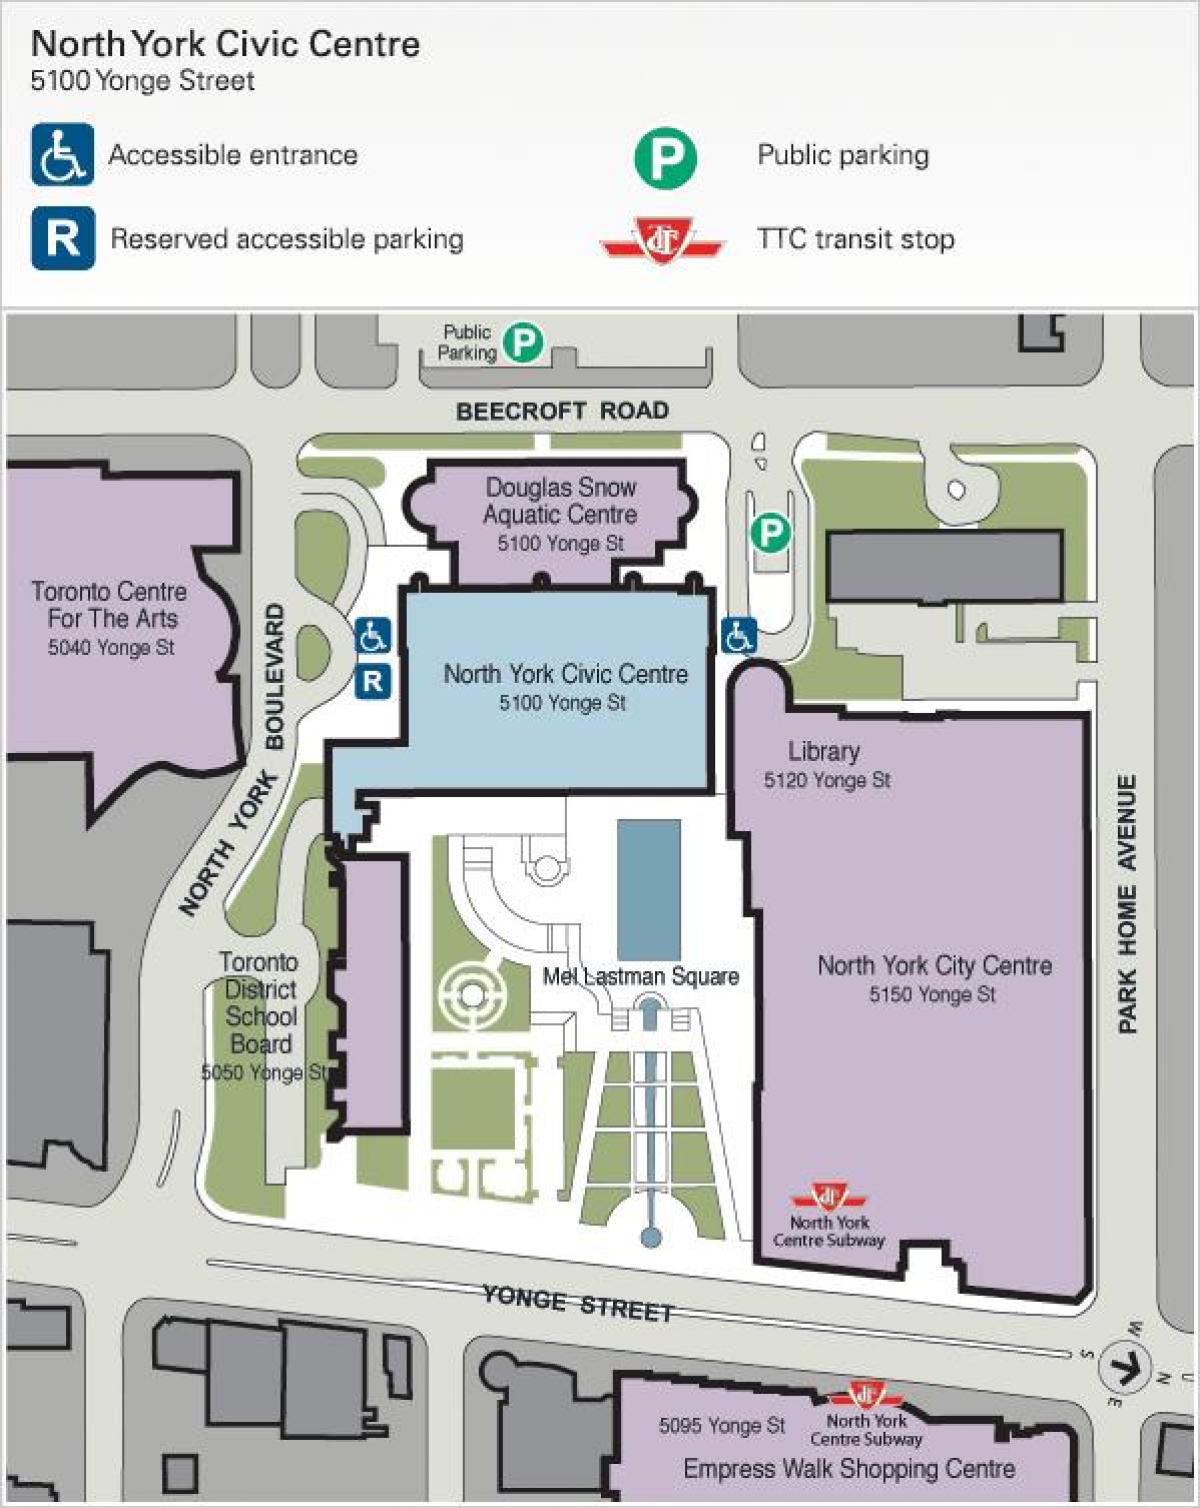 Mapa de Toronto Centre per a les Arts aparcament